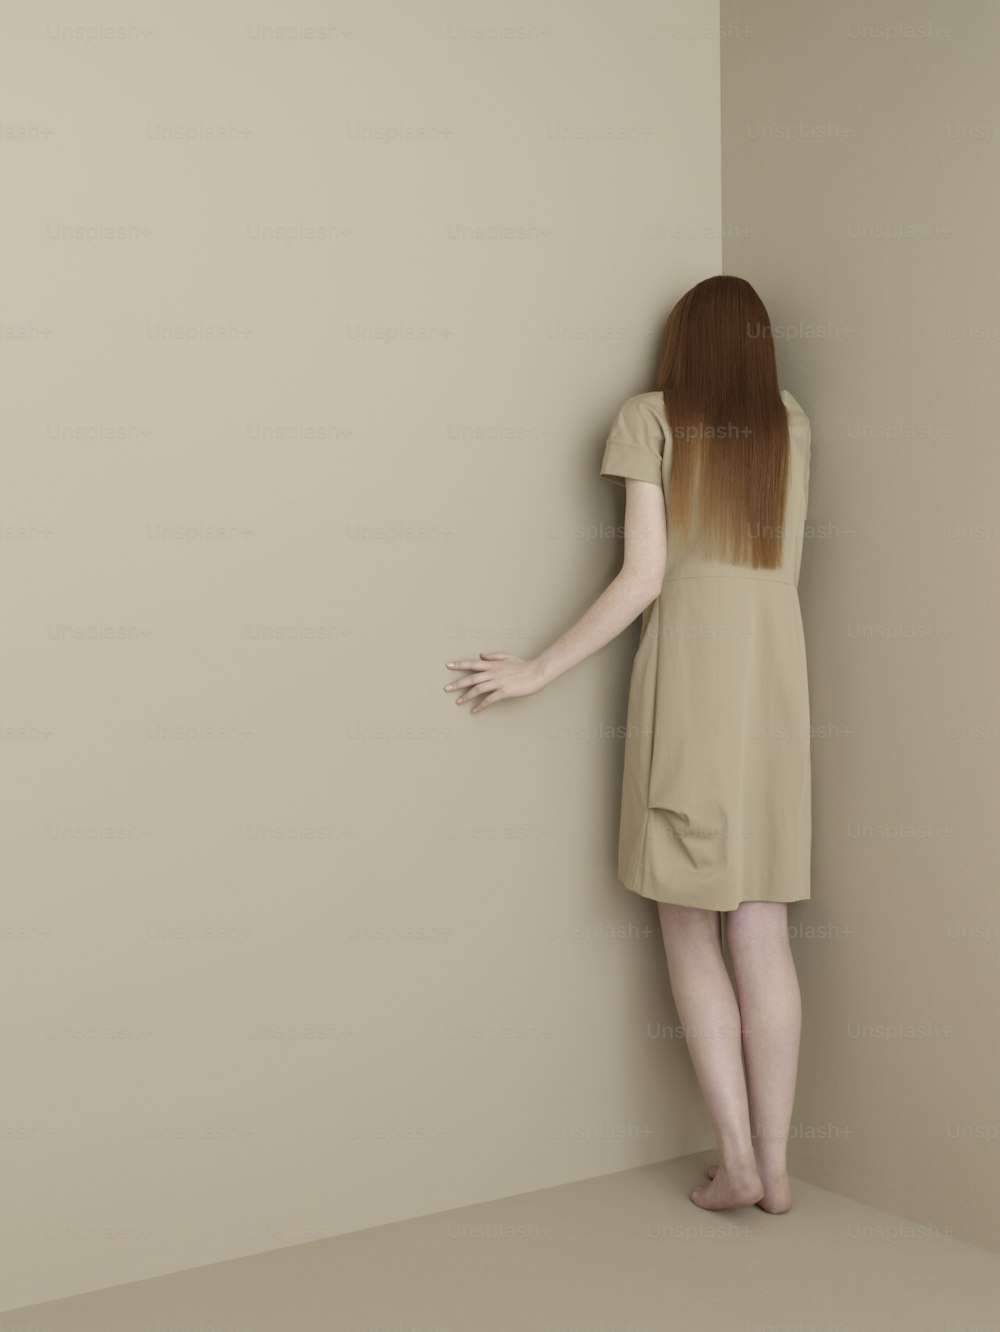 Eine Frau in einem kurzen Kleid lehnt an einer Wand